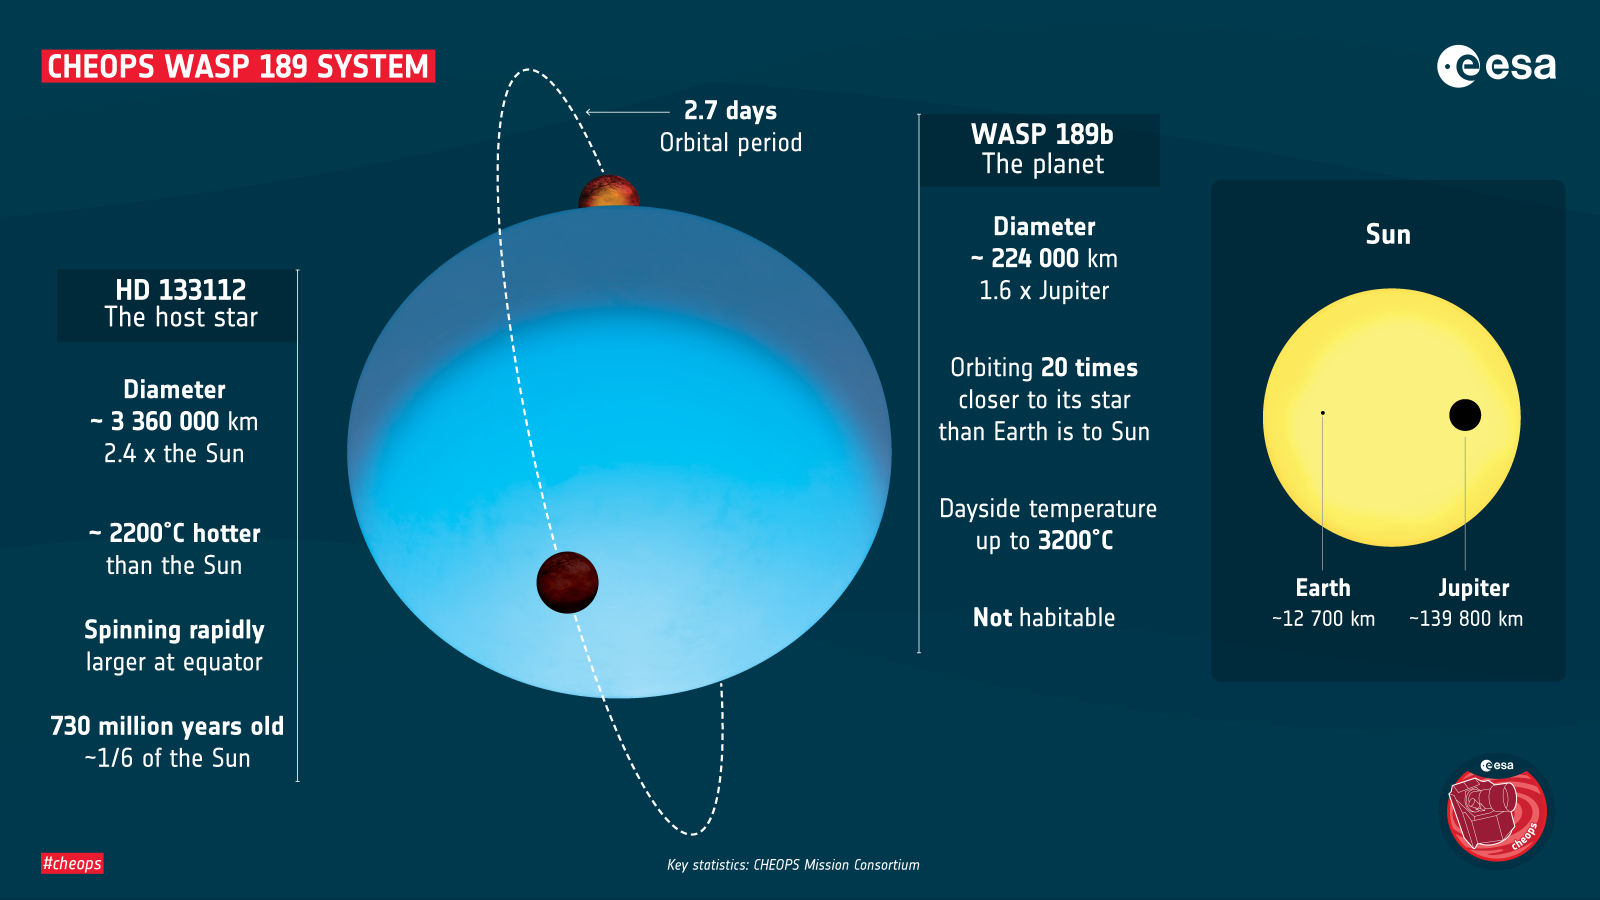 Uma estrela azul distante da Terra abriga um dos exoplanetas mais quentes do universo. Imagem: ESA